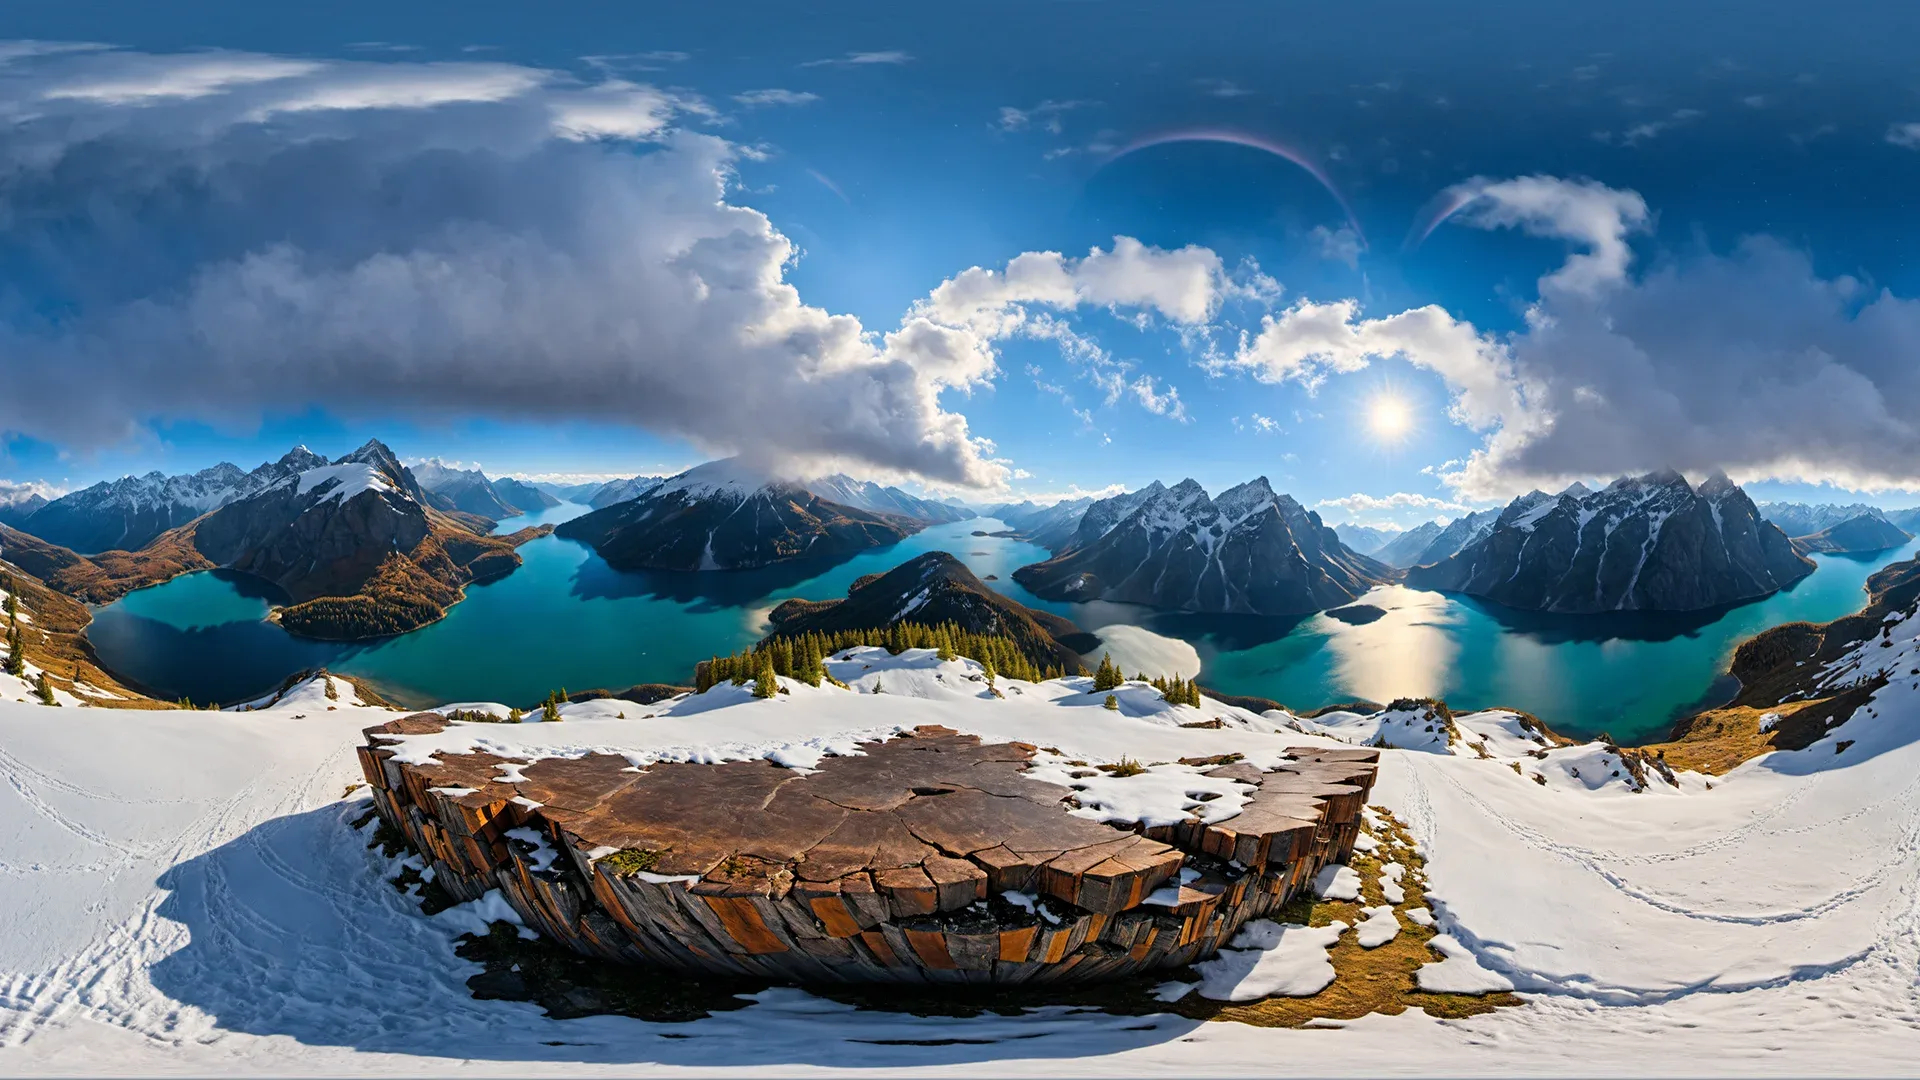 50 HDRI Winter Nature Panoramas